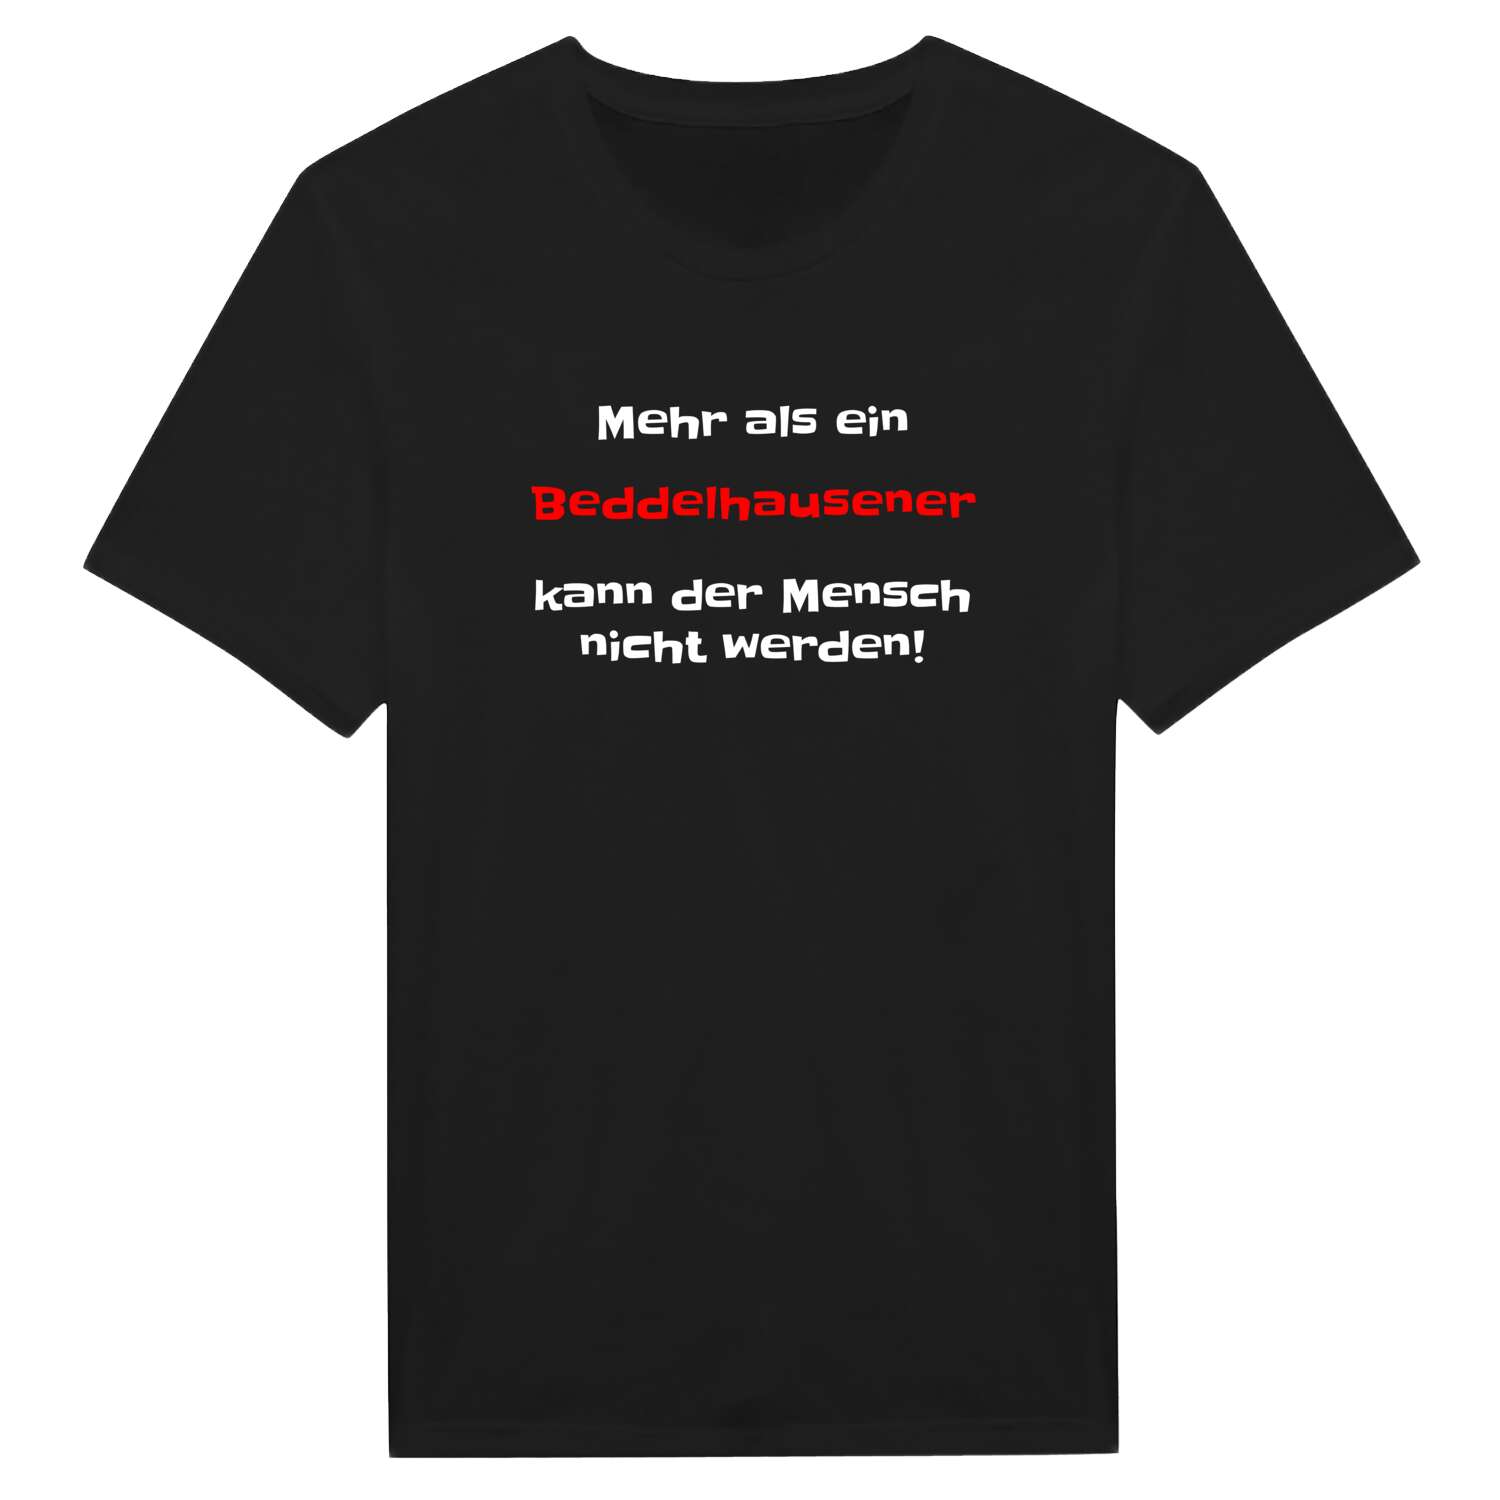 Beddelhausen T-Shirt »Mehr als ein«